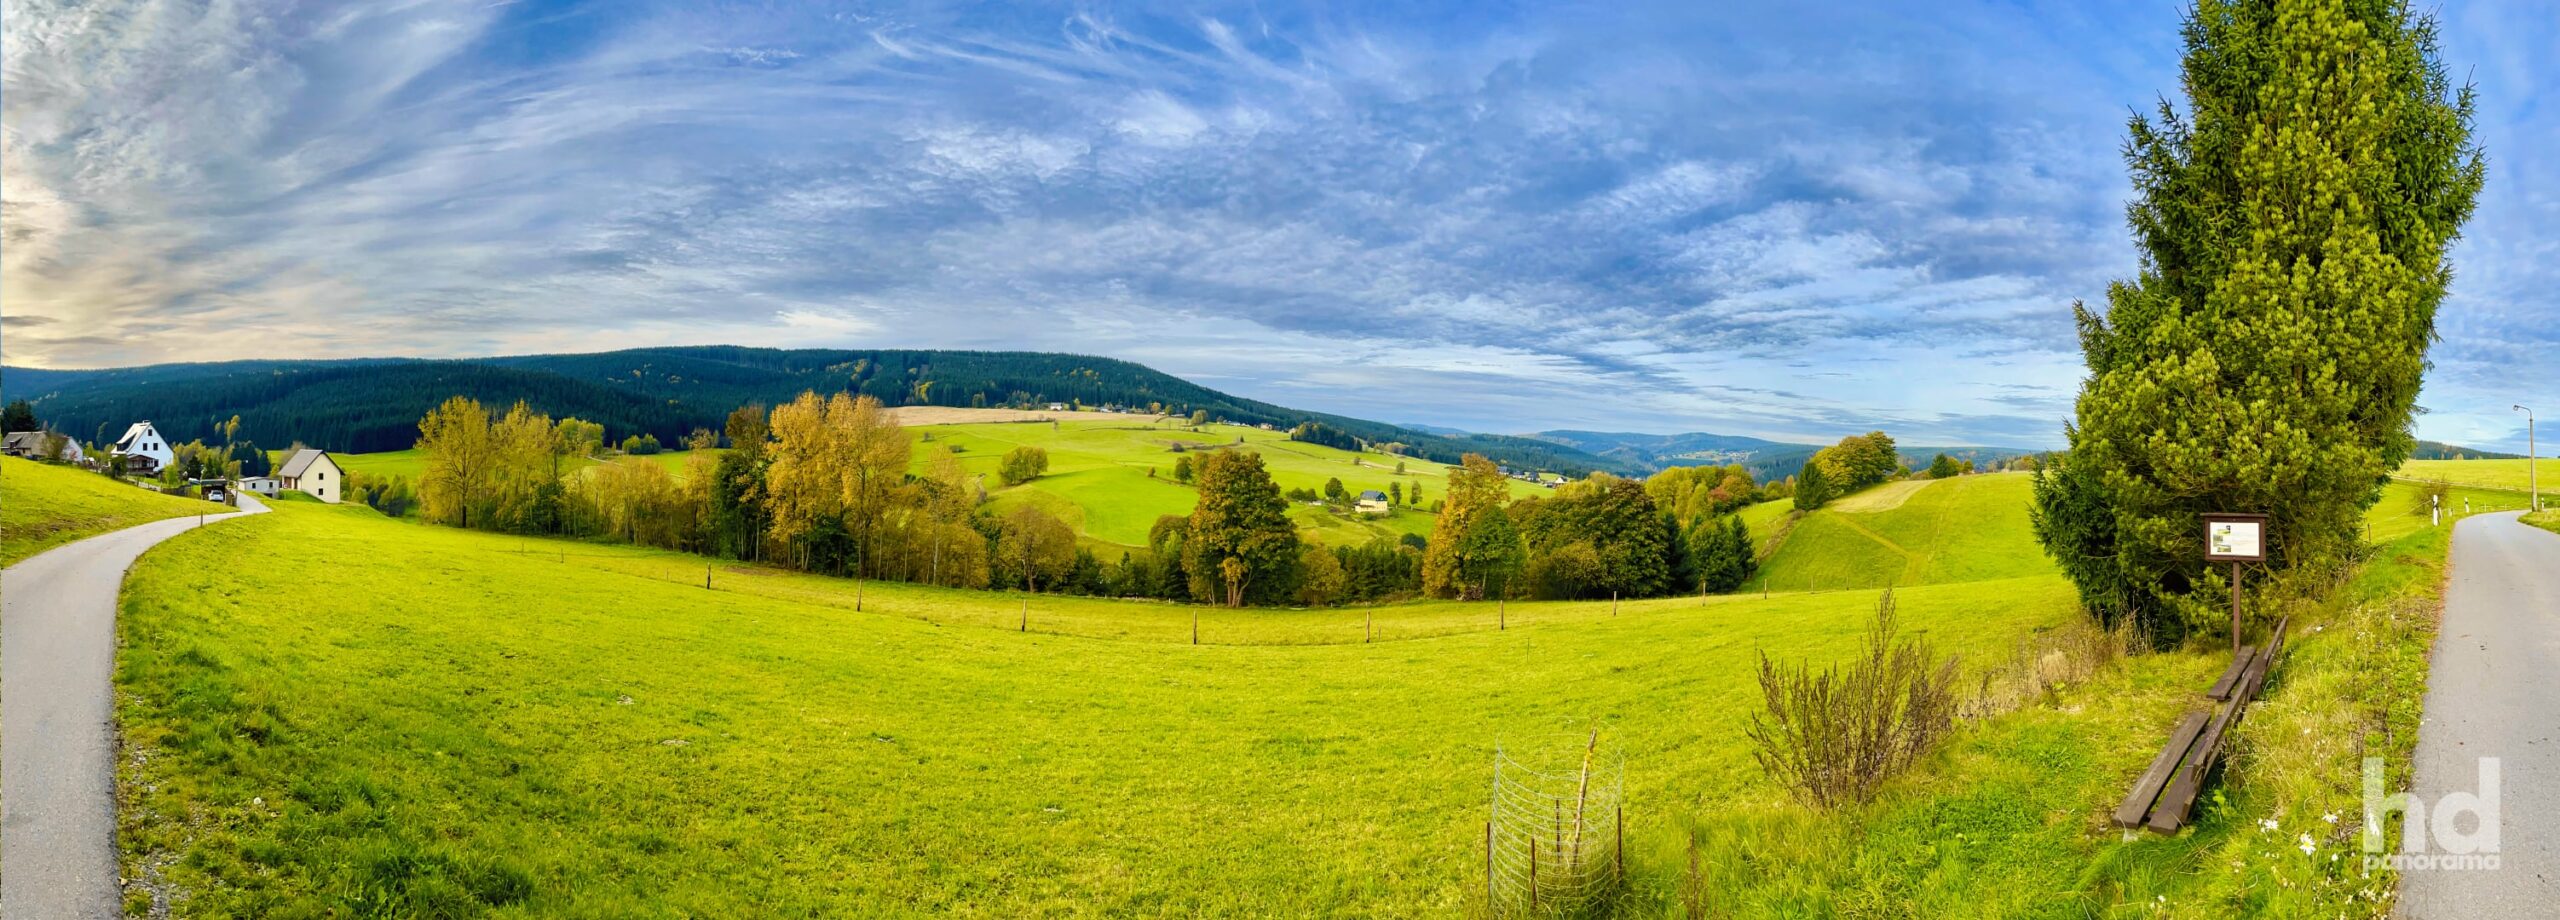 Wiesen, Felder und Wälder prägen die Landschaft (Breitenbrunn, Erzgebirge)